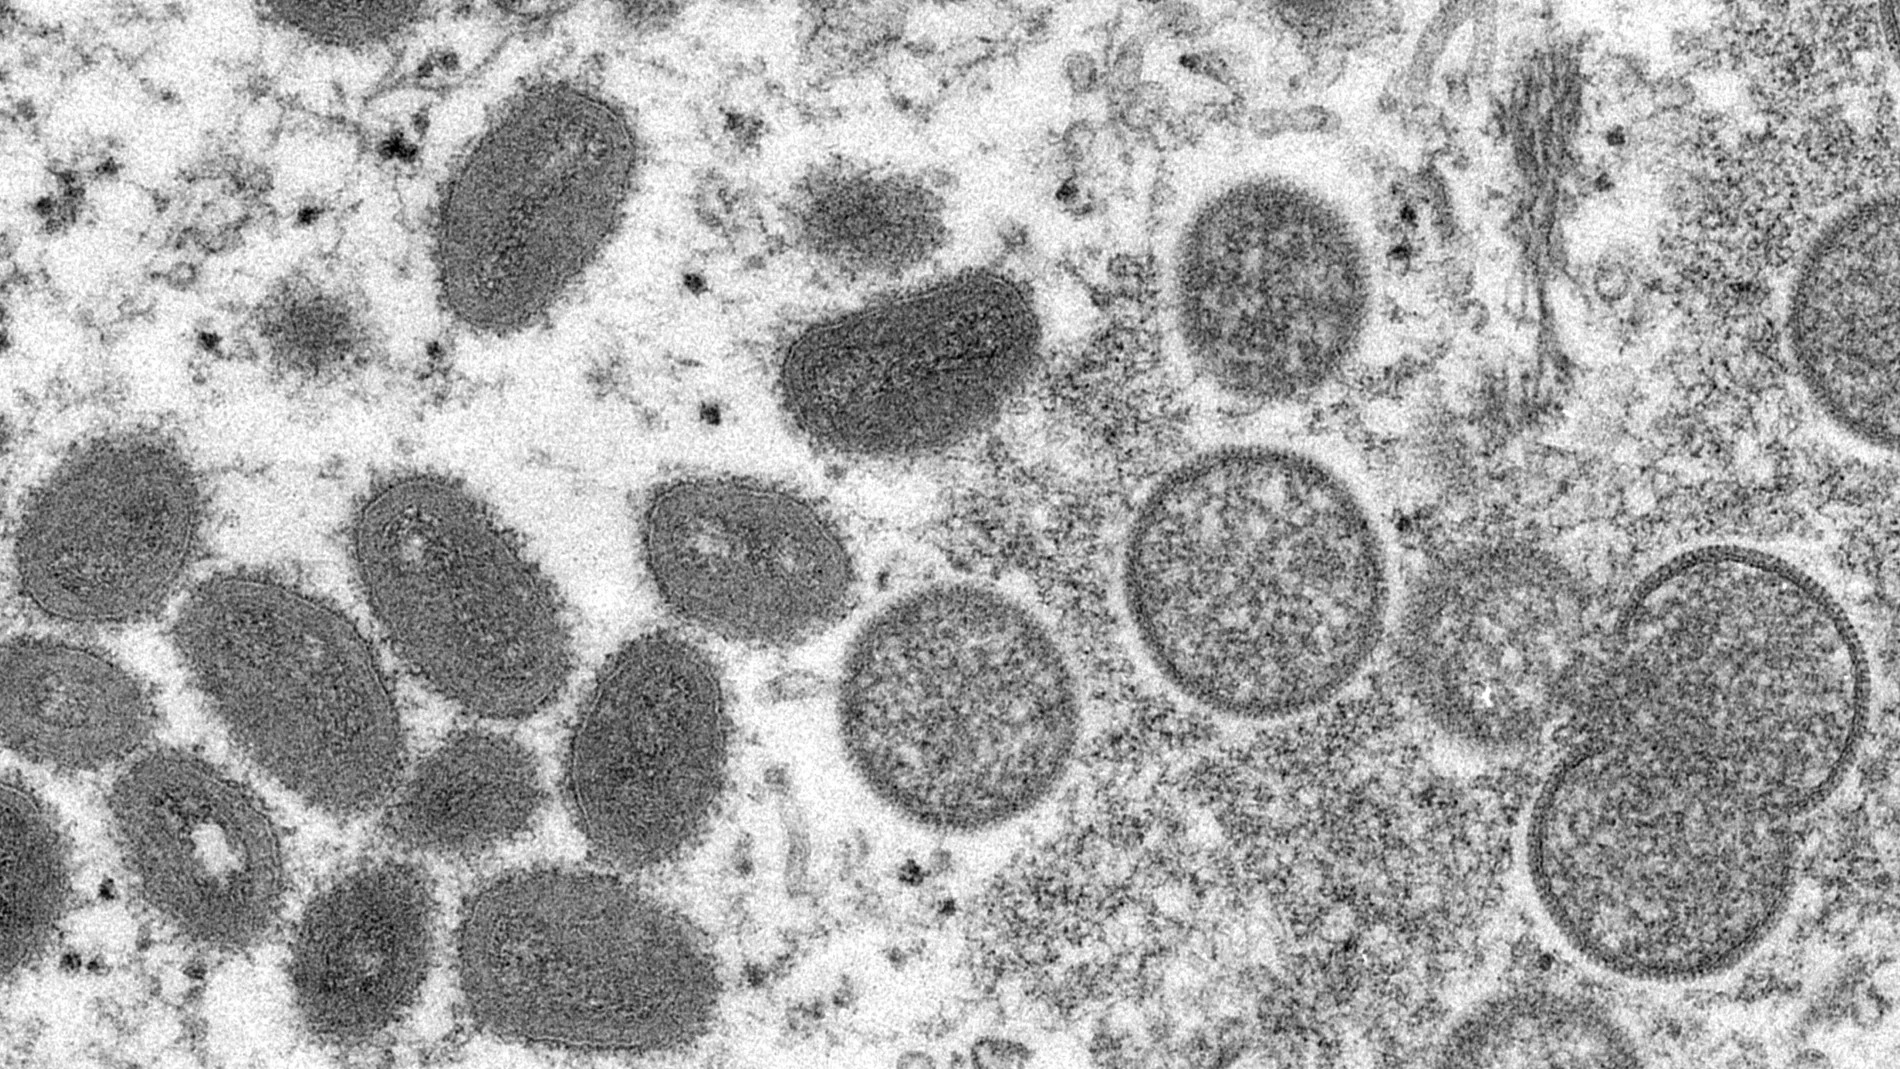 Imagen de microscopio proporcionada por los Centros para el Control y la Prevención de Enfermedades que muestra viriones maduros de viruela del mono